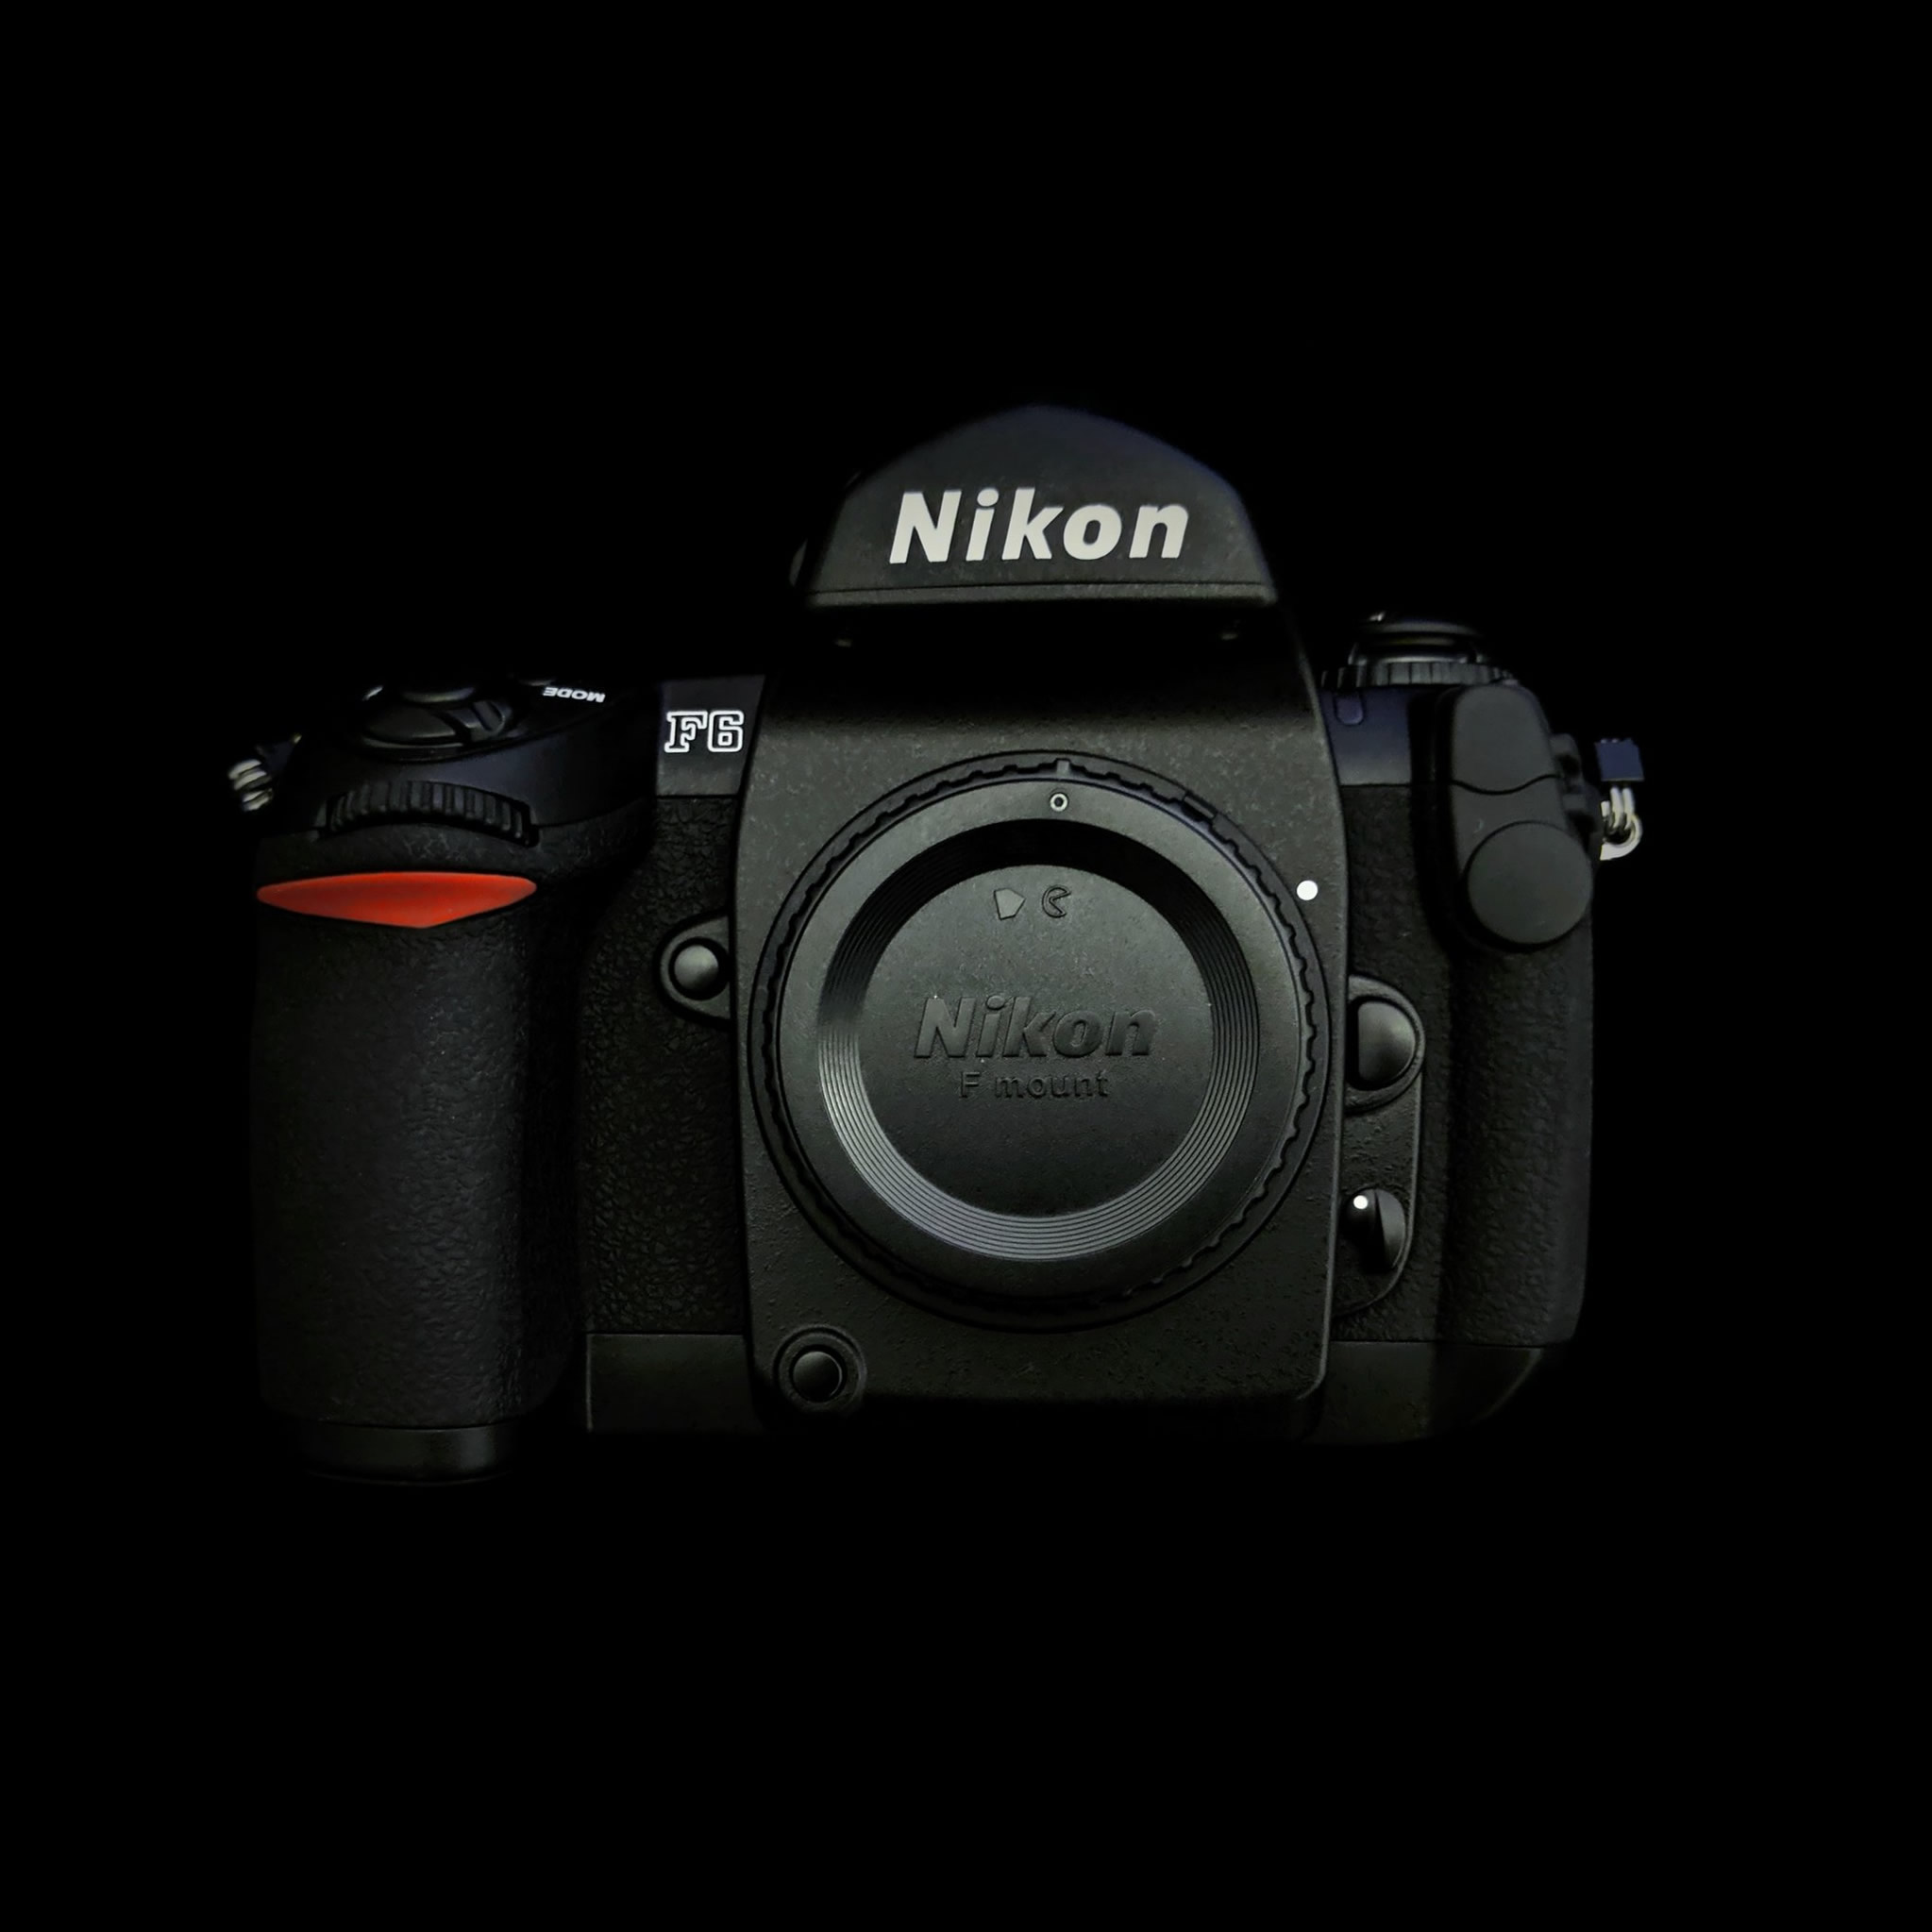 My Nikon F6